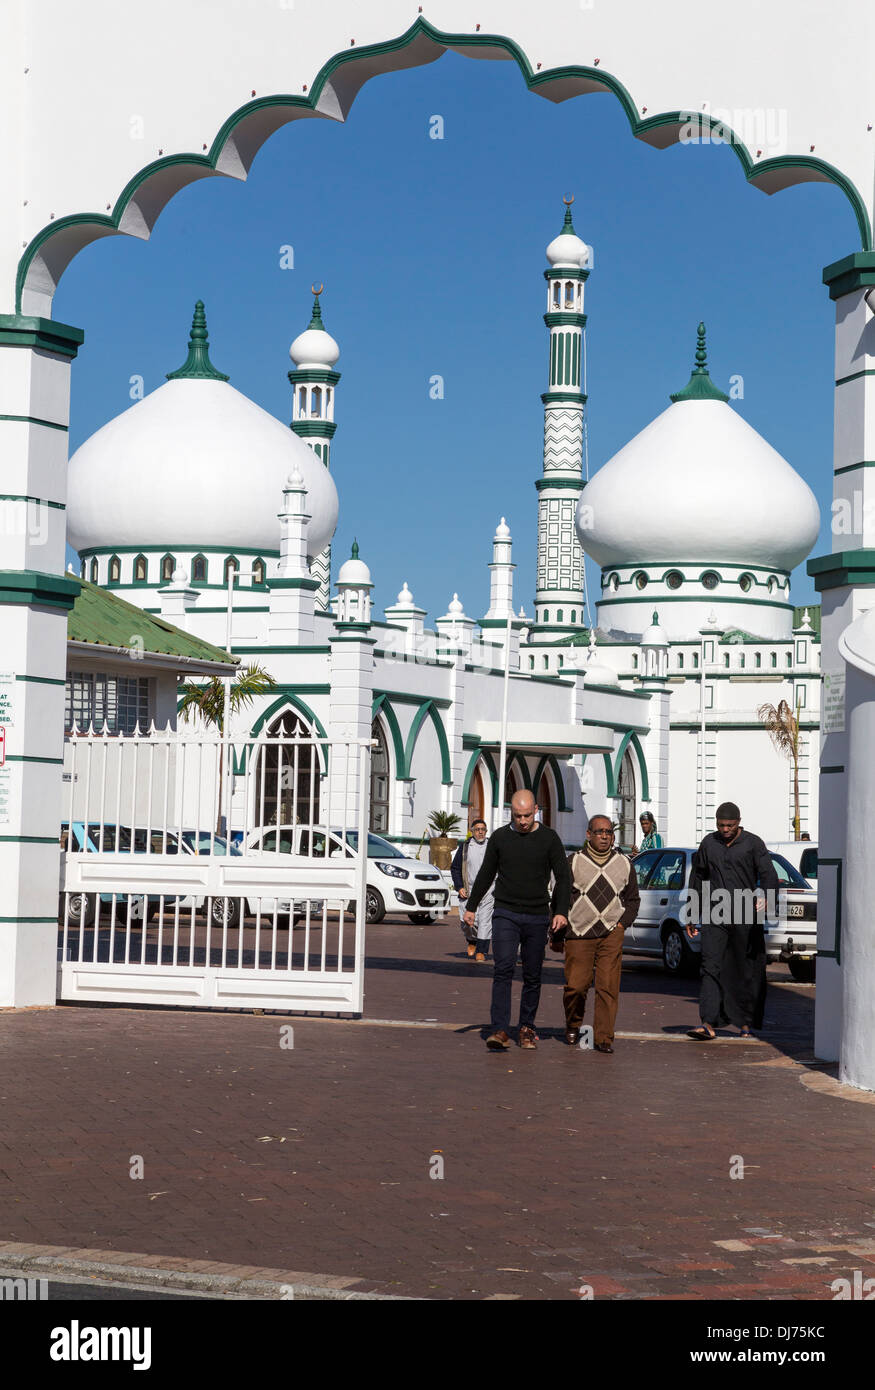 Südafrika. Habibia Soofi Moschee, Athlone, Rylands Estate, einem Vorort von Kapstadt. Stockfoto